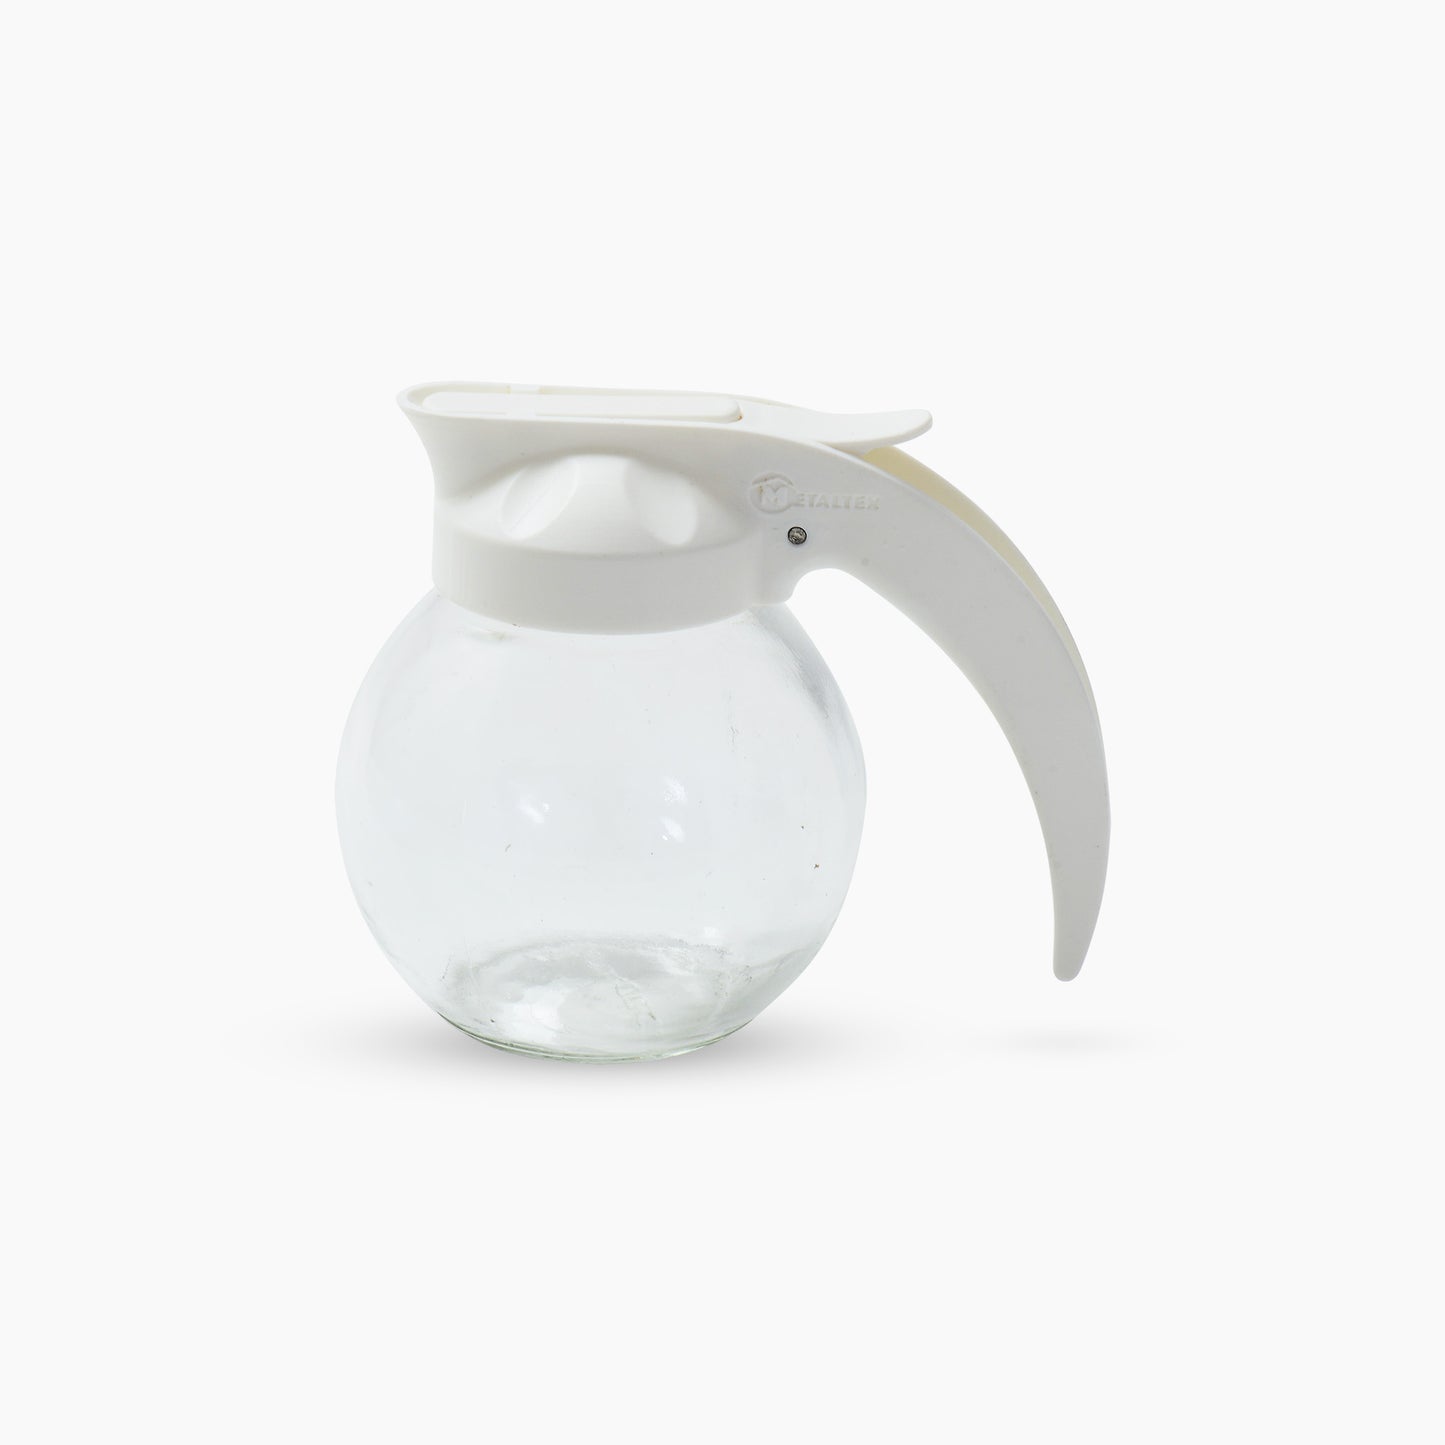 Stylish Glass Jar With Pour Spout Lid